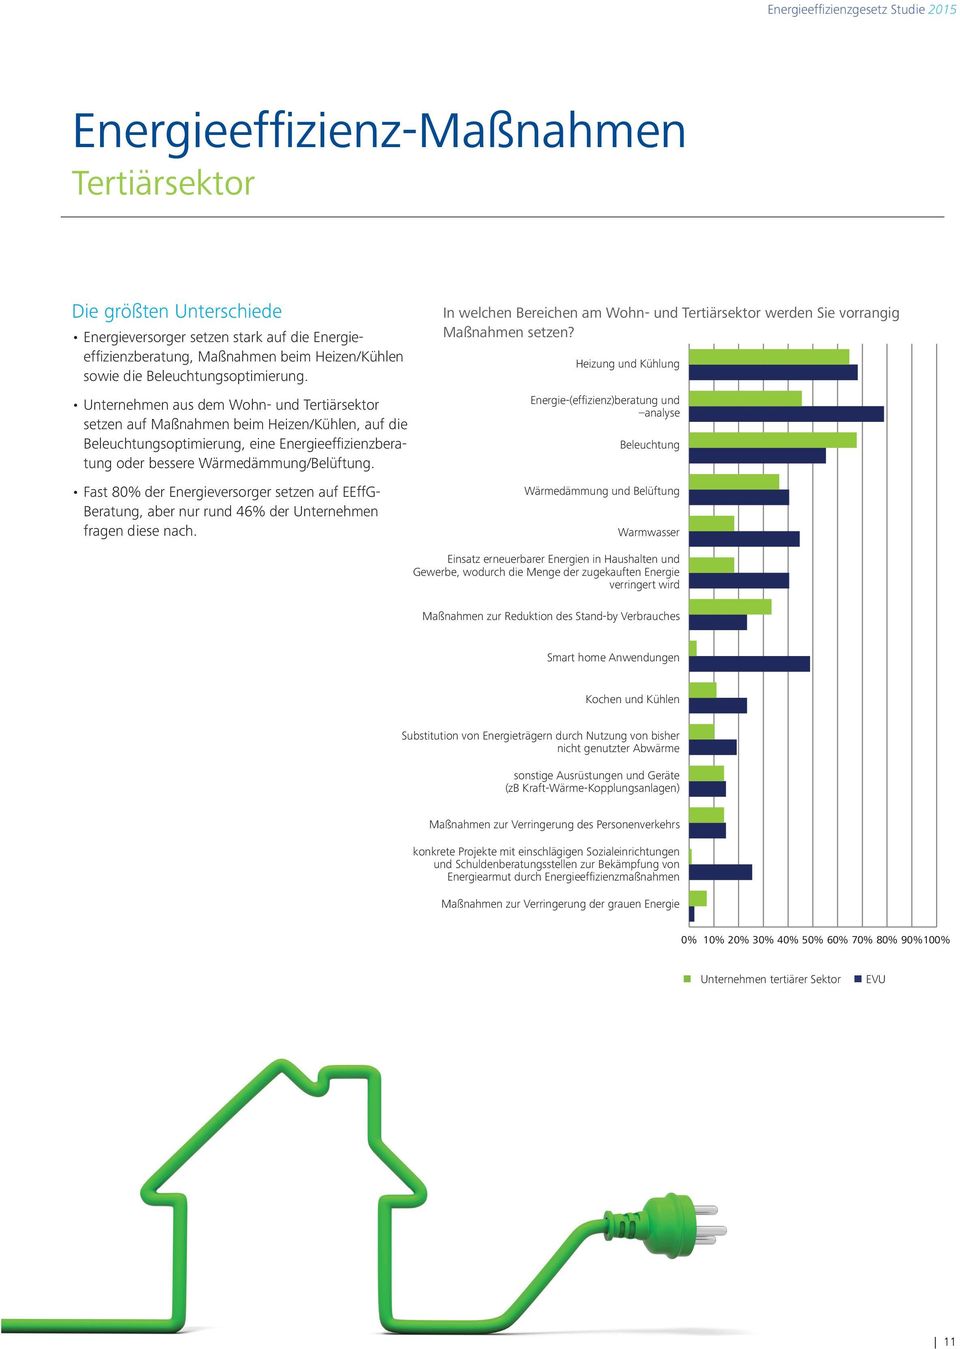 Fast 80% der Energieversorger setzen auf EEffG- Beratung, aber nur rund 46% der Unternehmen fragen diese nach.